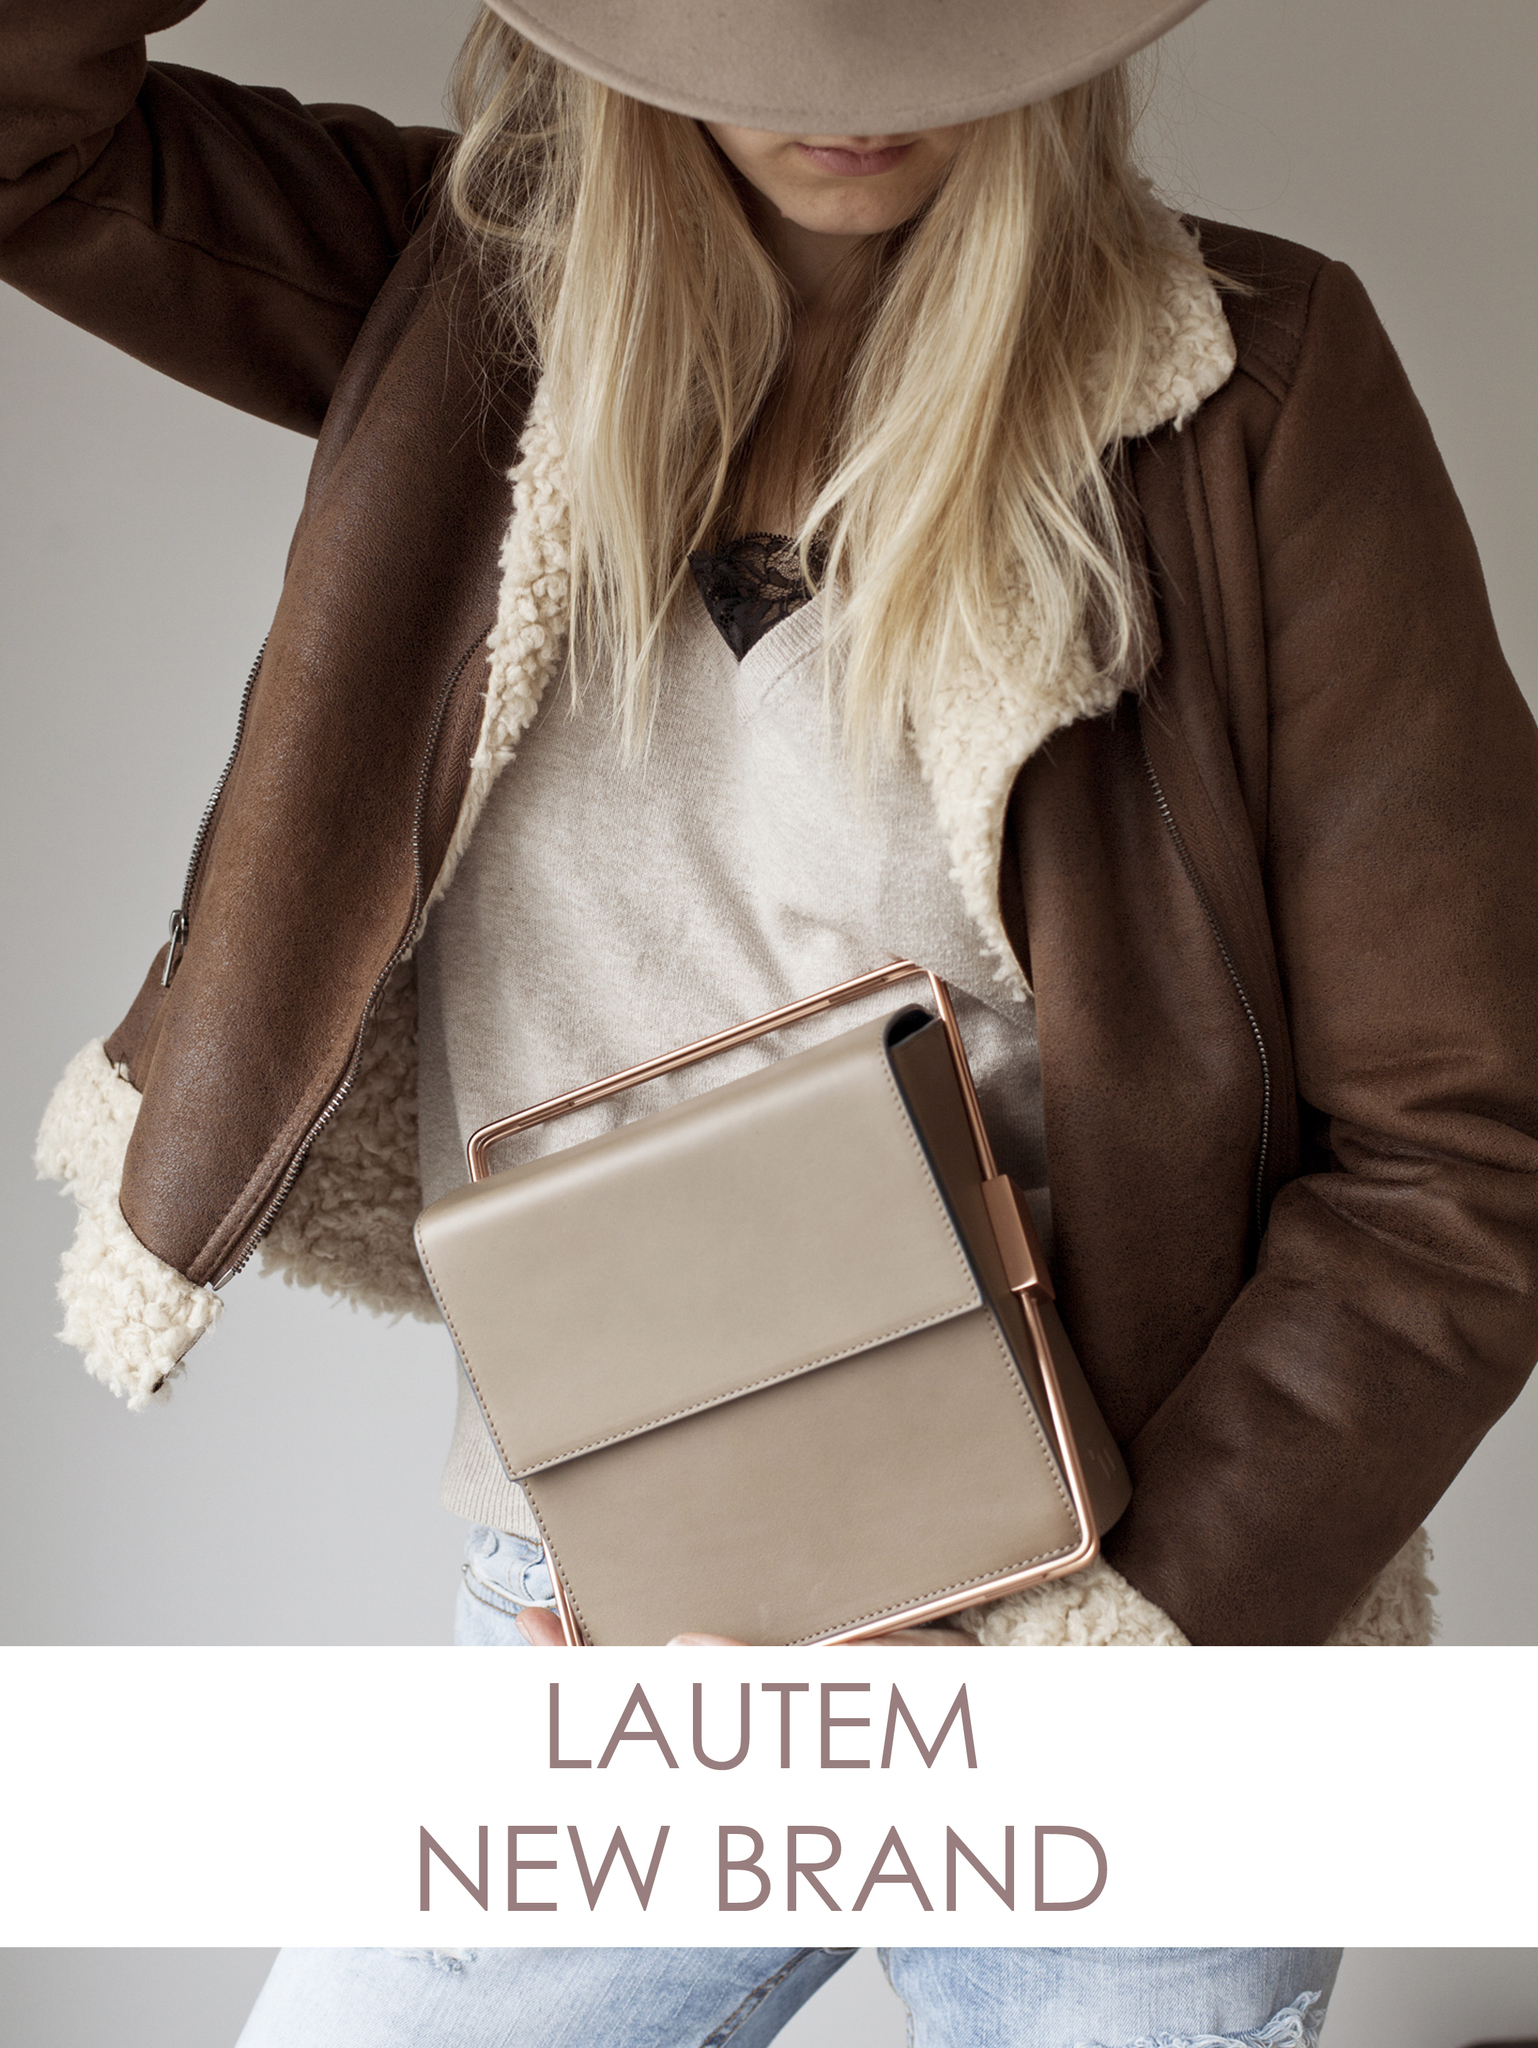 Новый бренд сумок из Испании - Lautem